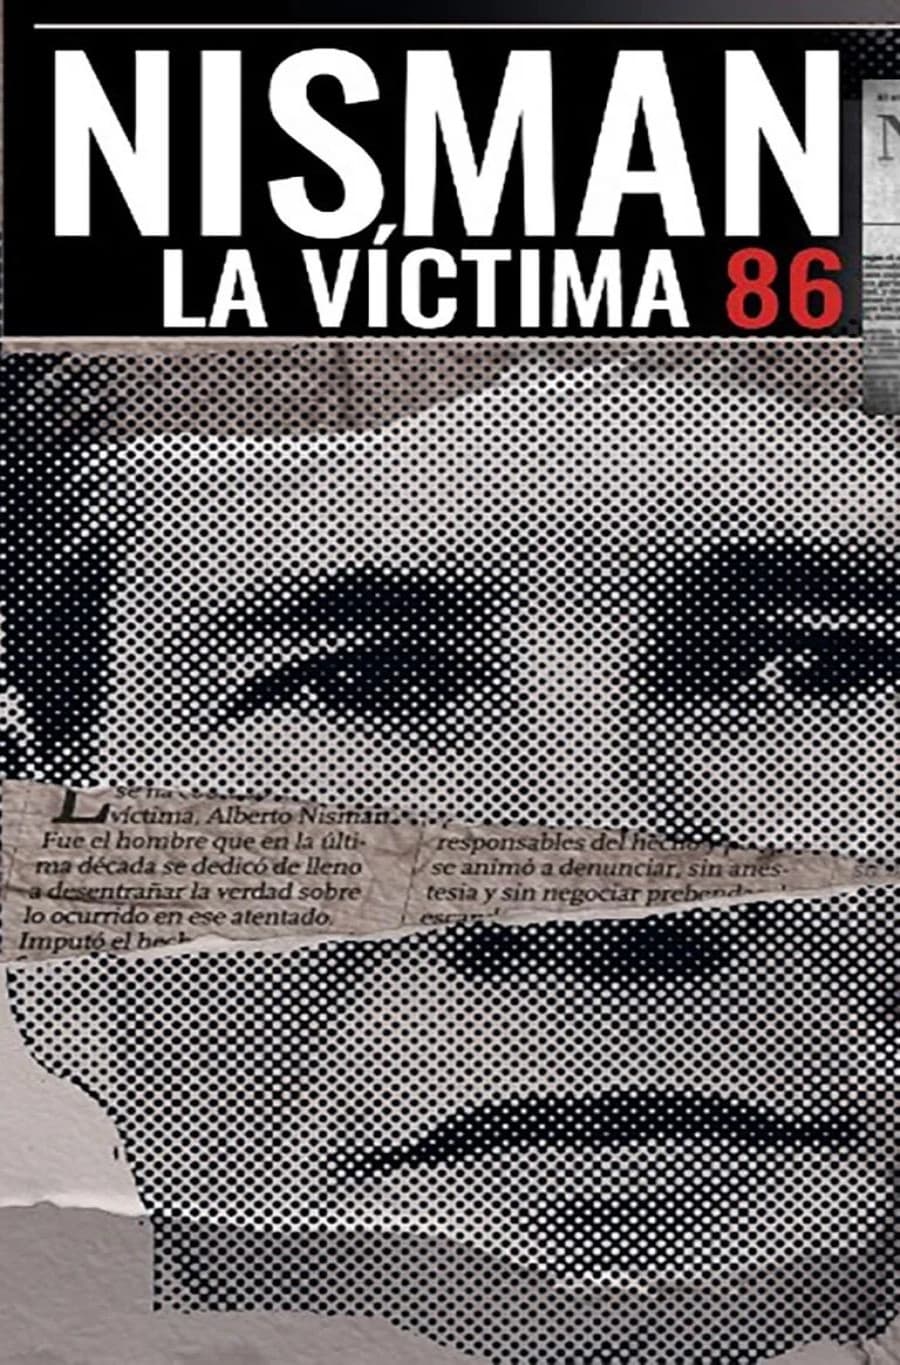 Nisman, the 86th Victim